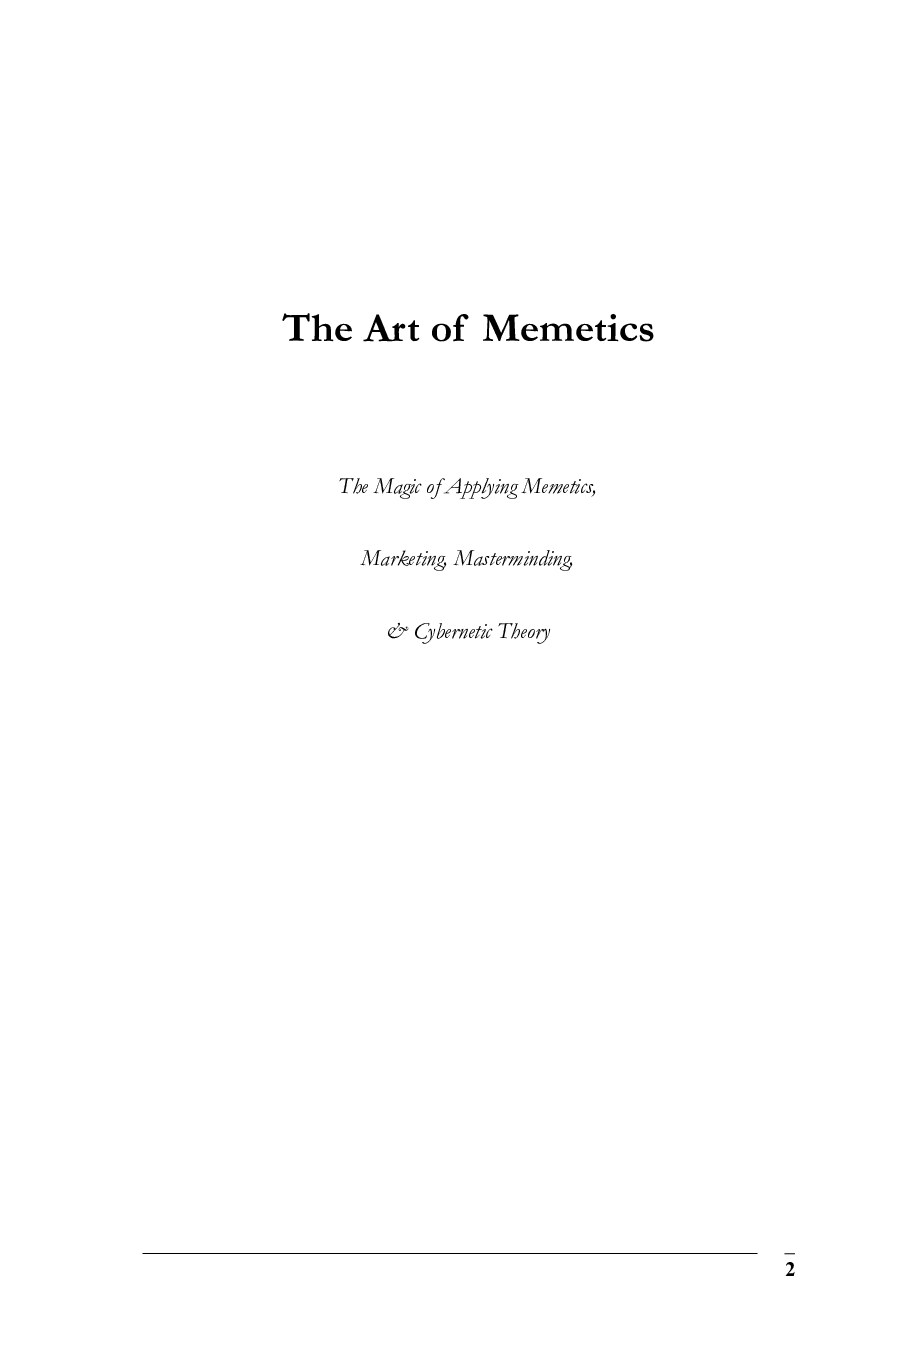 Wilson & Unruh; The Art of Memetics